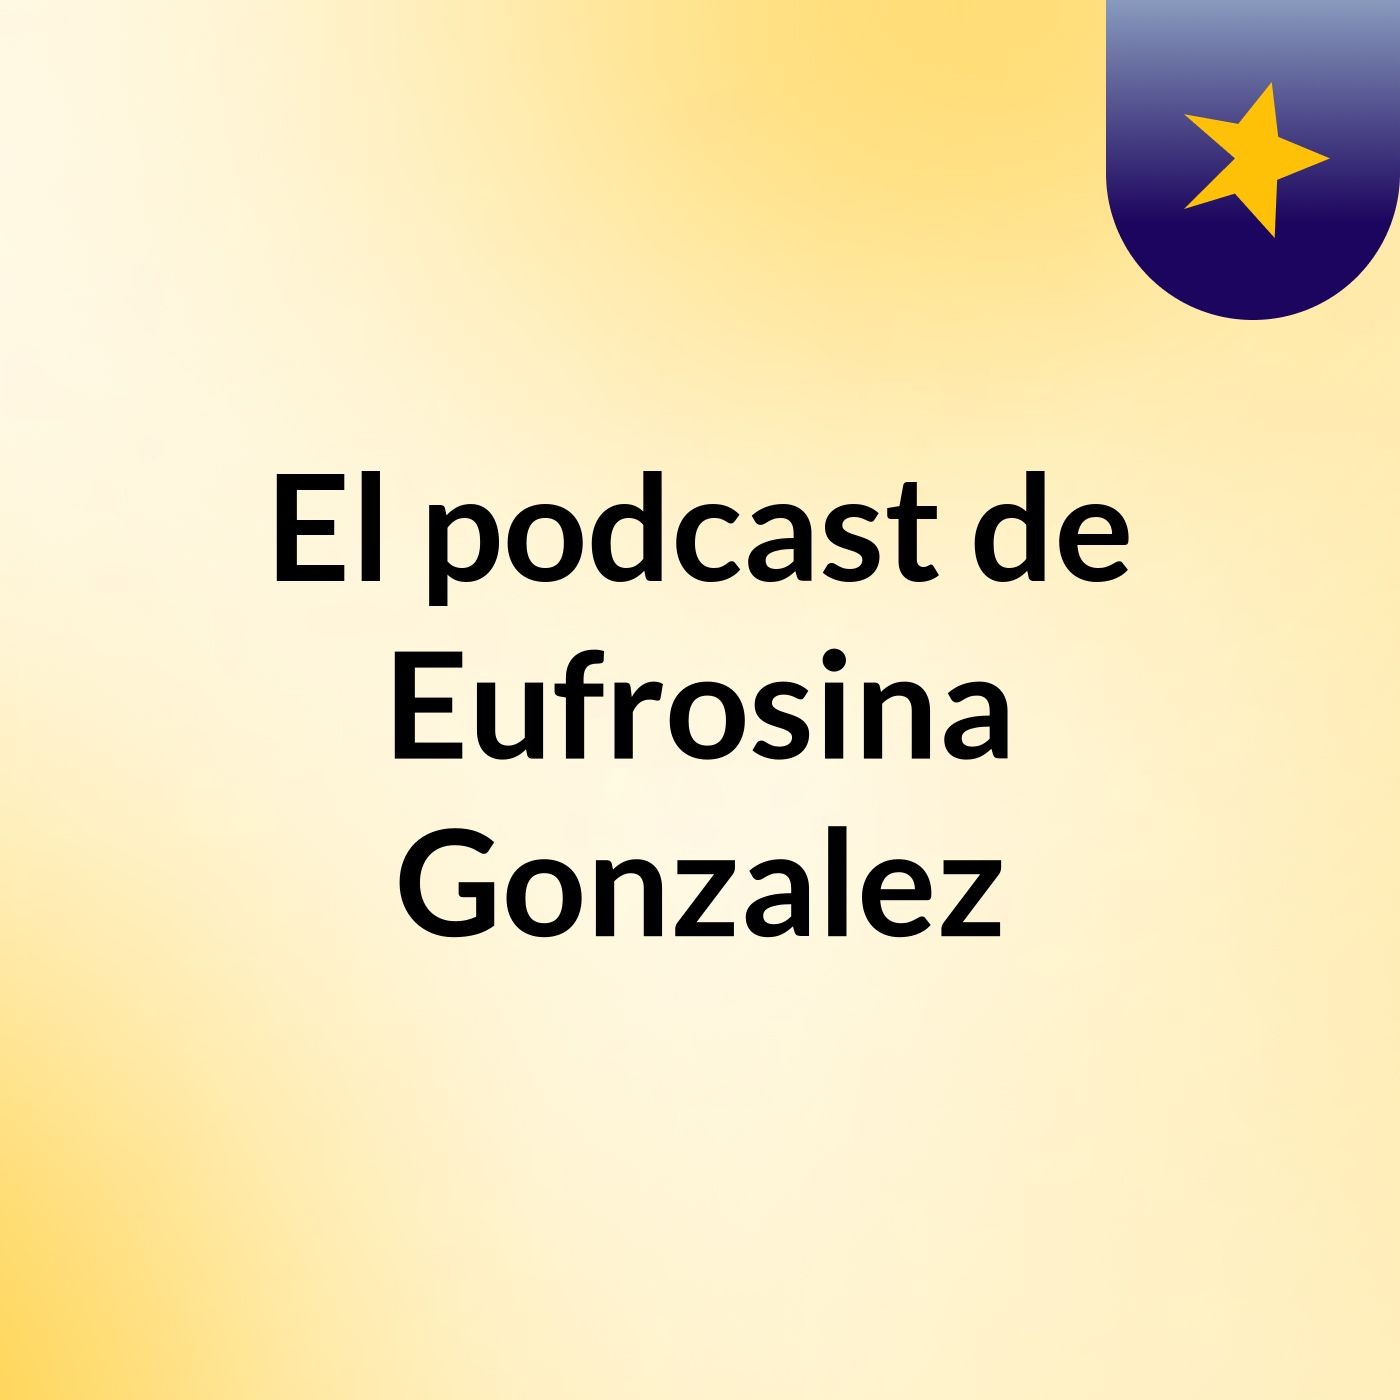 El podcast de Eufrosina Gonzalez